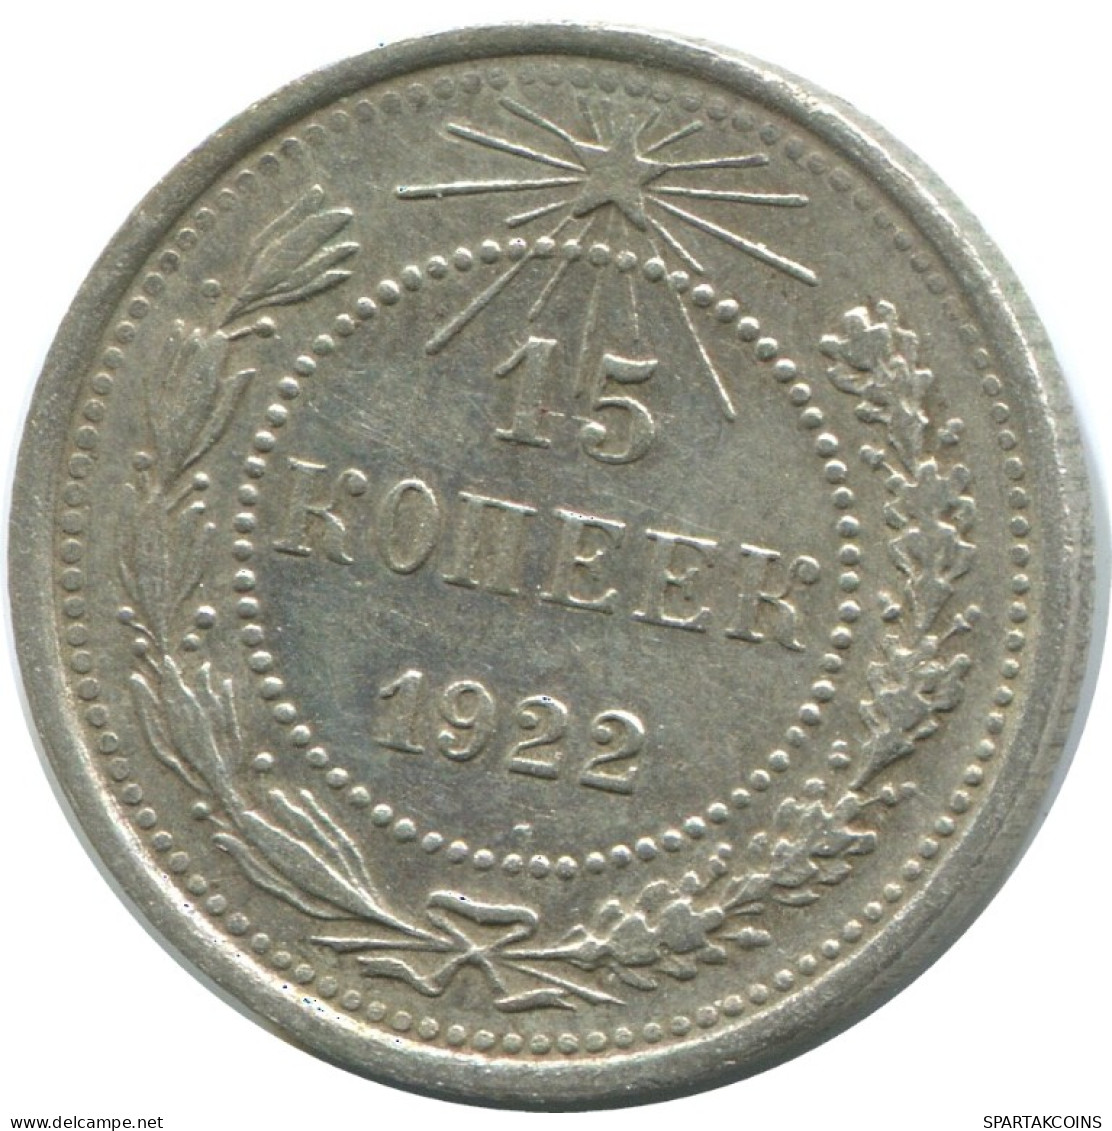 15 KOPEKS 1922 RUSSLAND RUSSIA RSFSR SILBER Münze HIGH GRADE #AF225.4.D.A - Russia